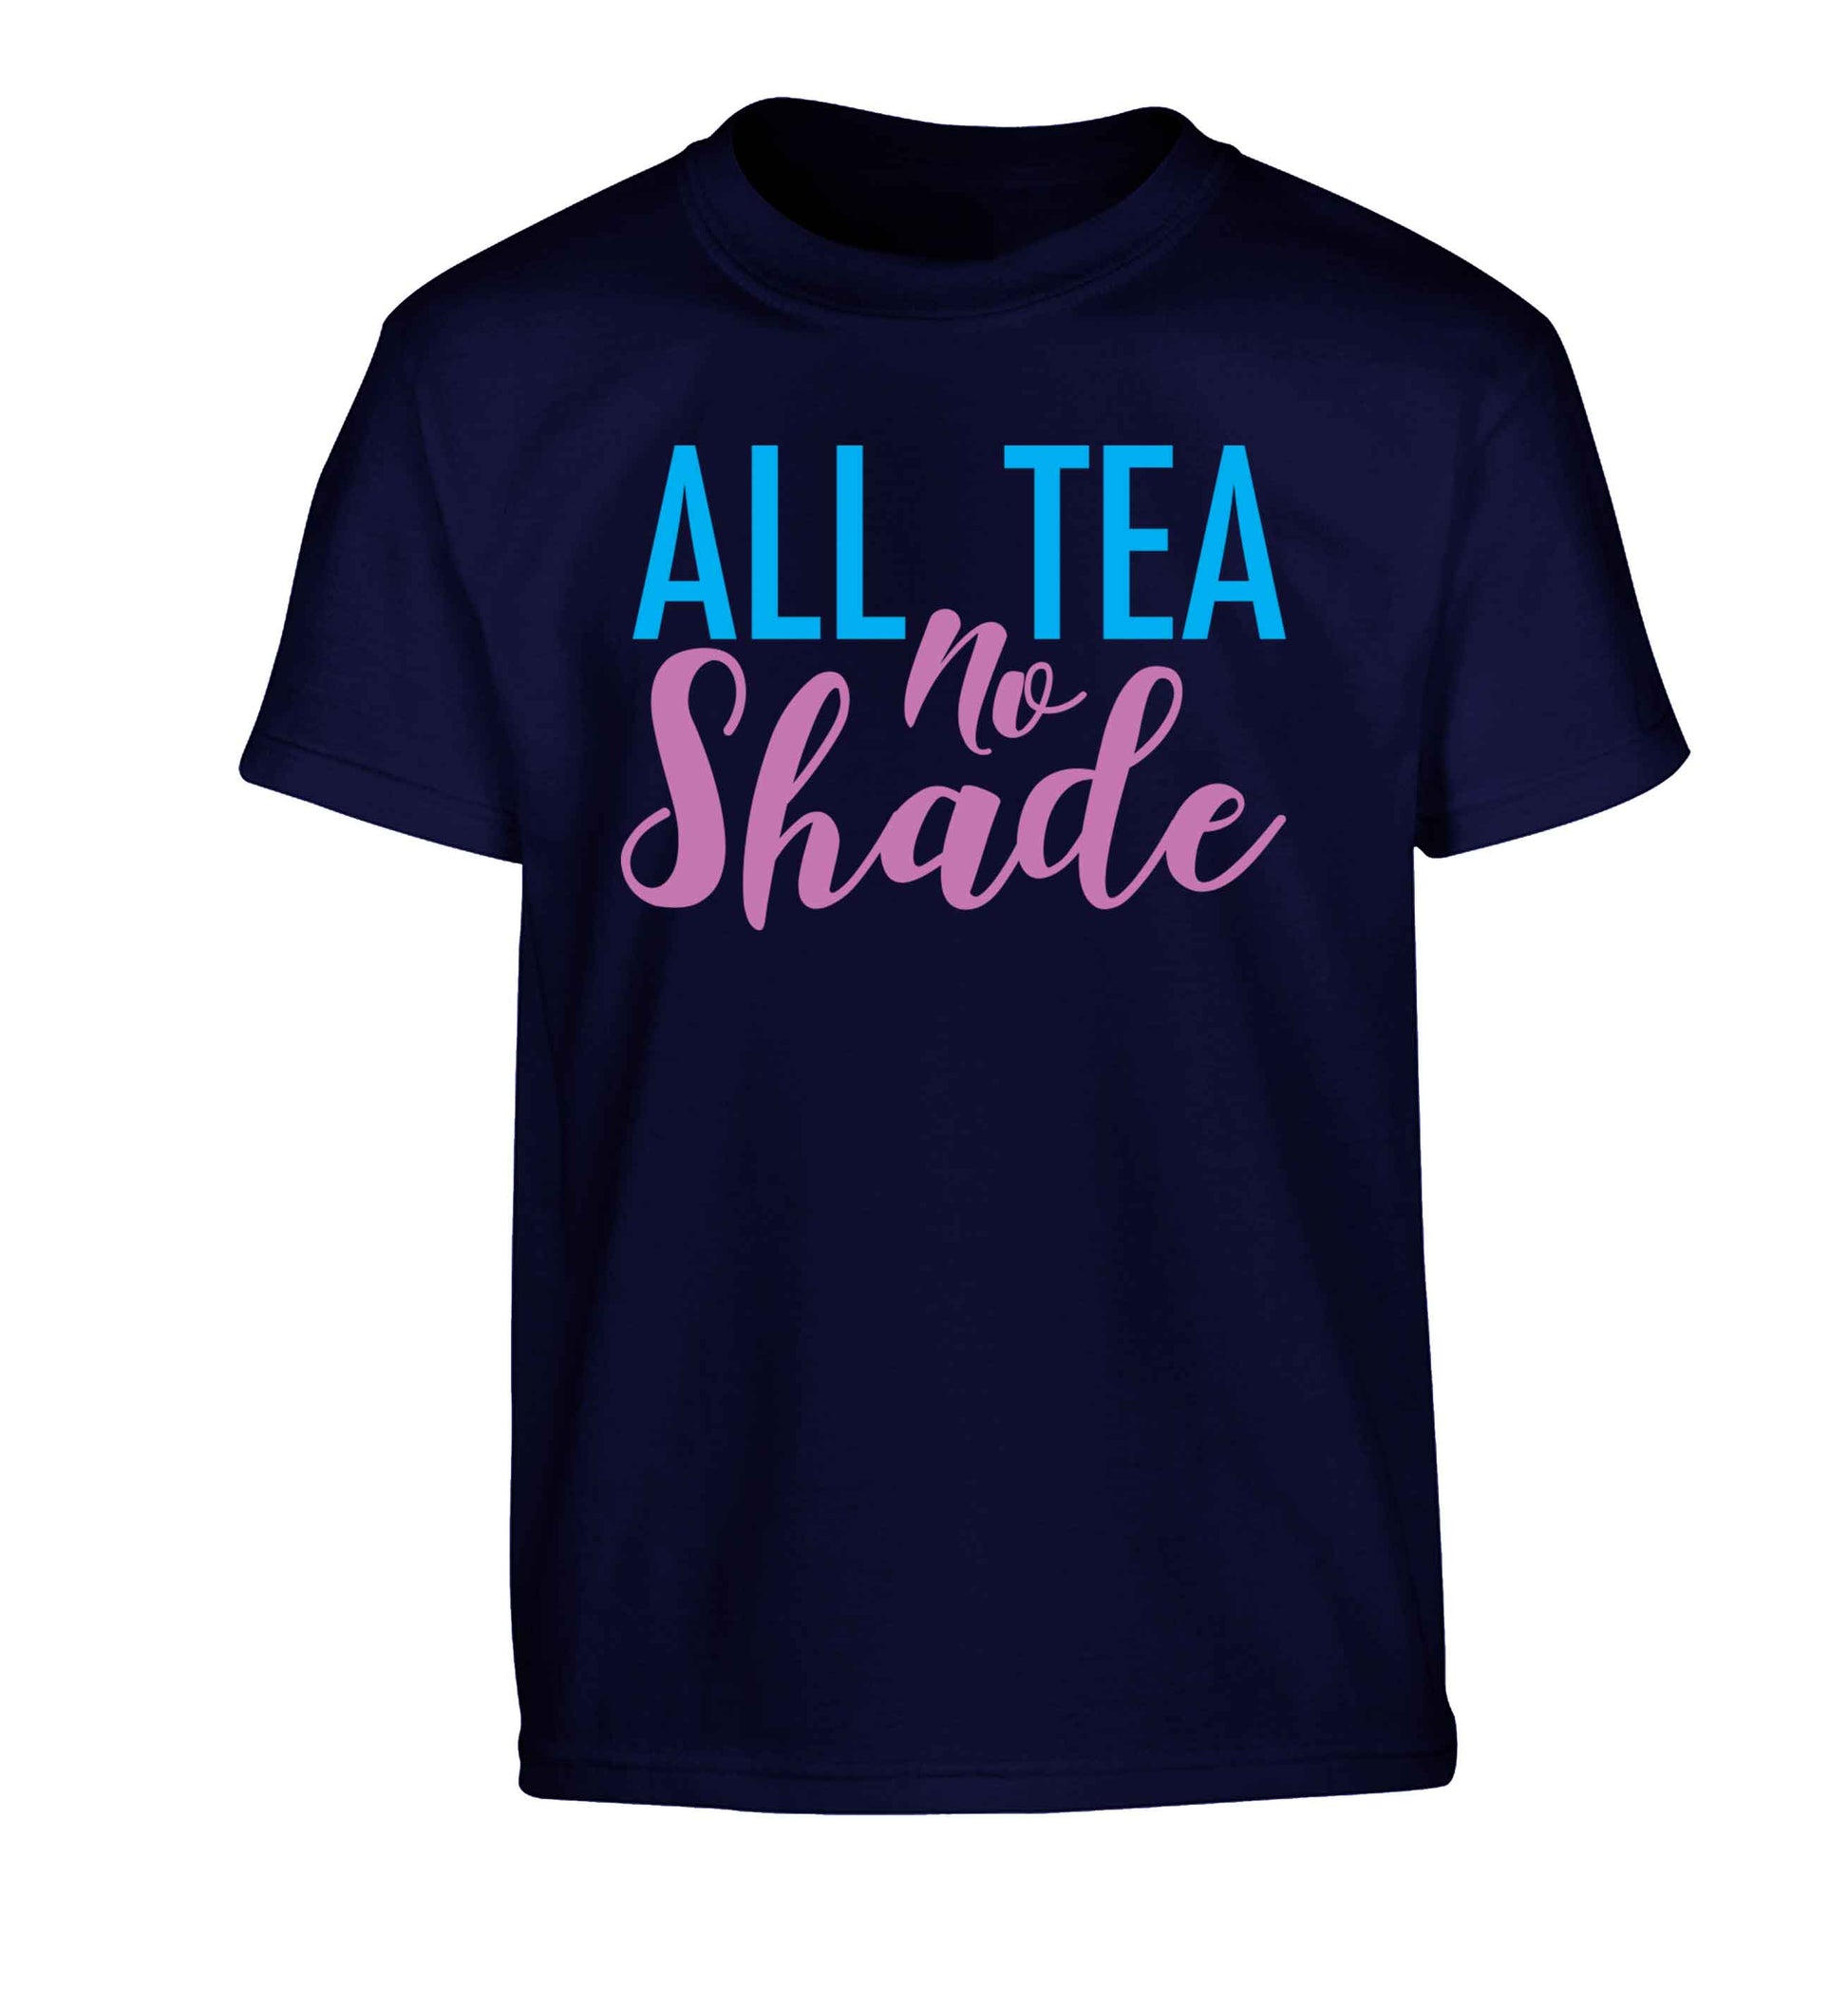 All tea no shade Children's navy Tshirt 12-13 Years